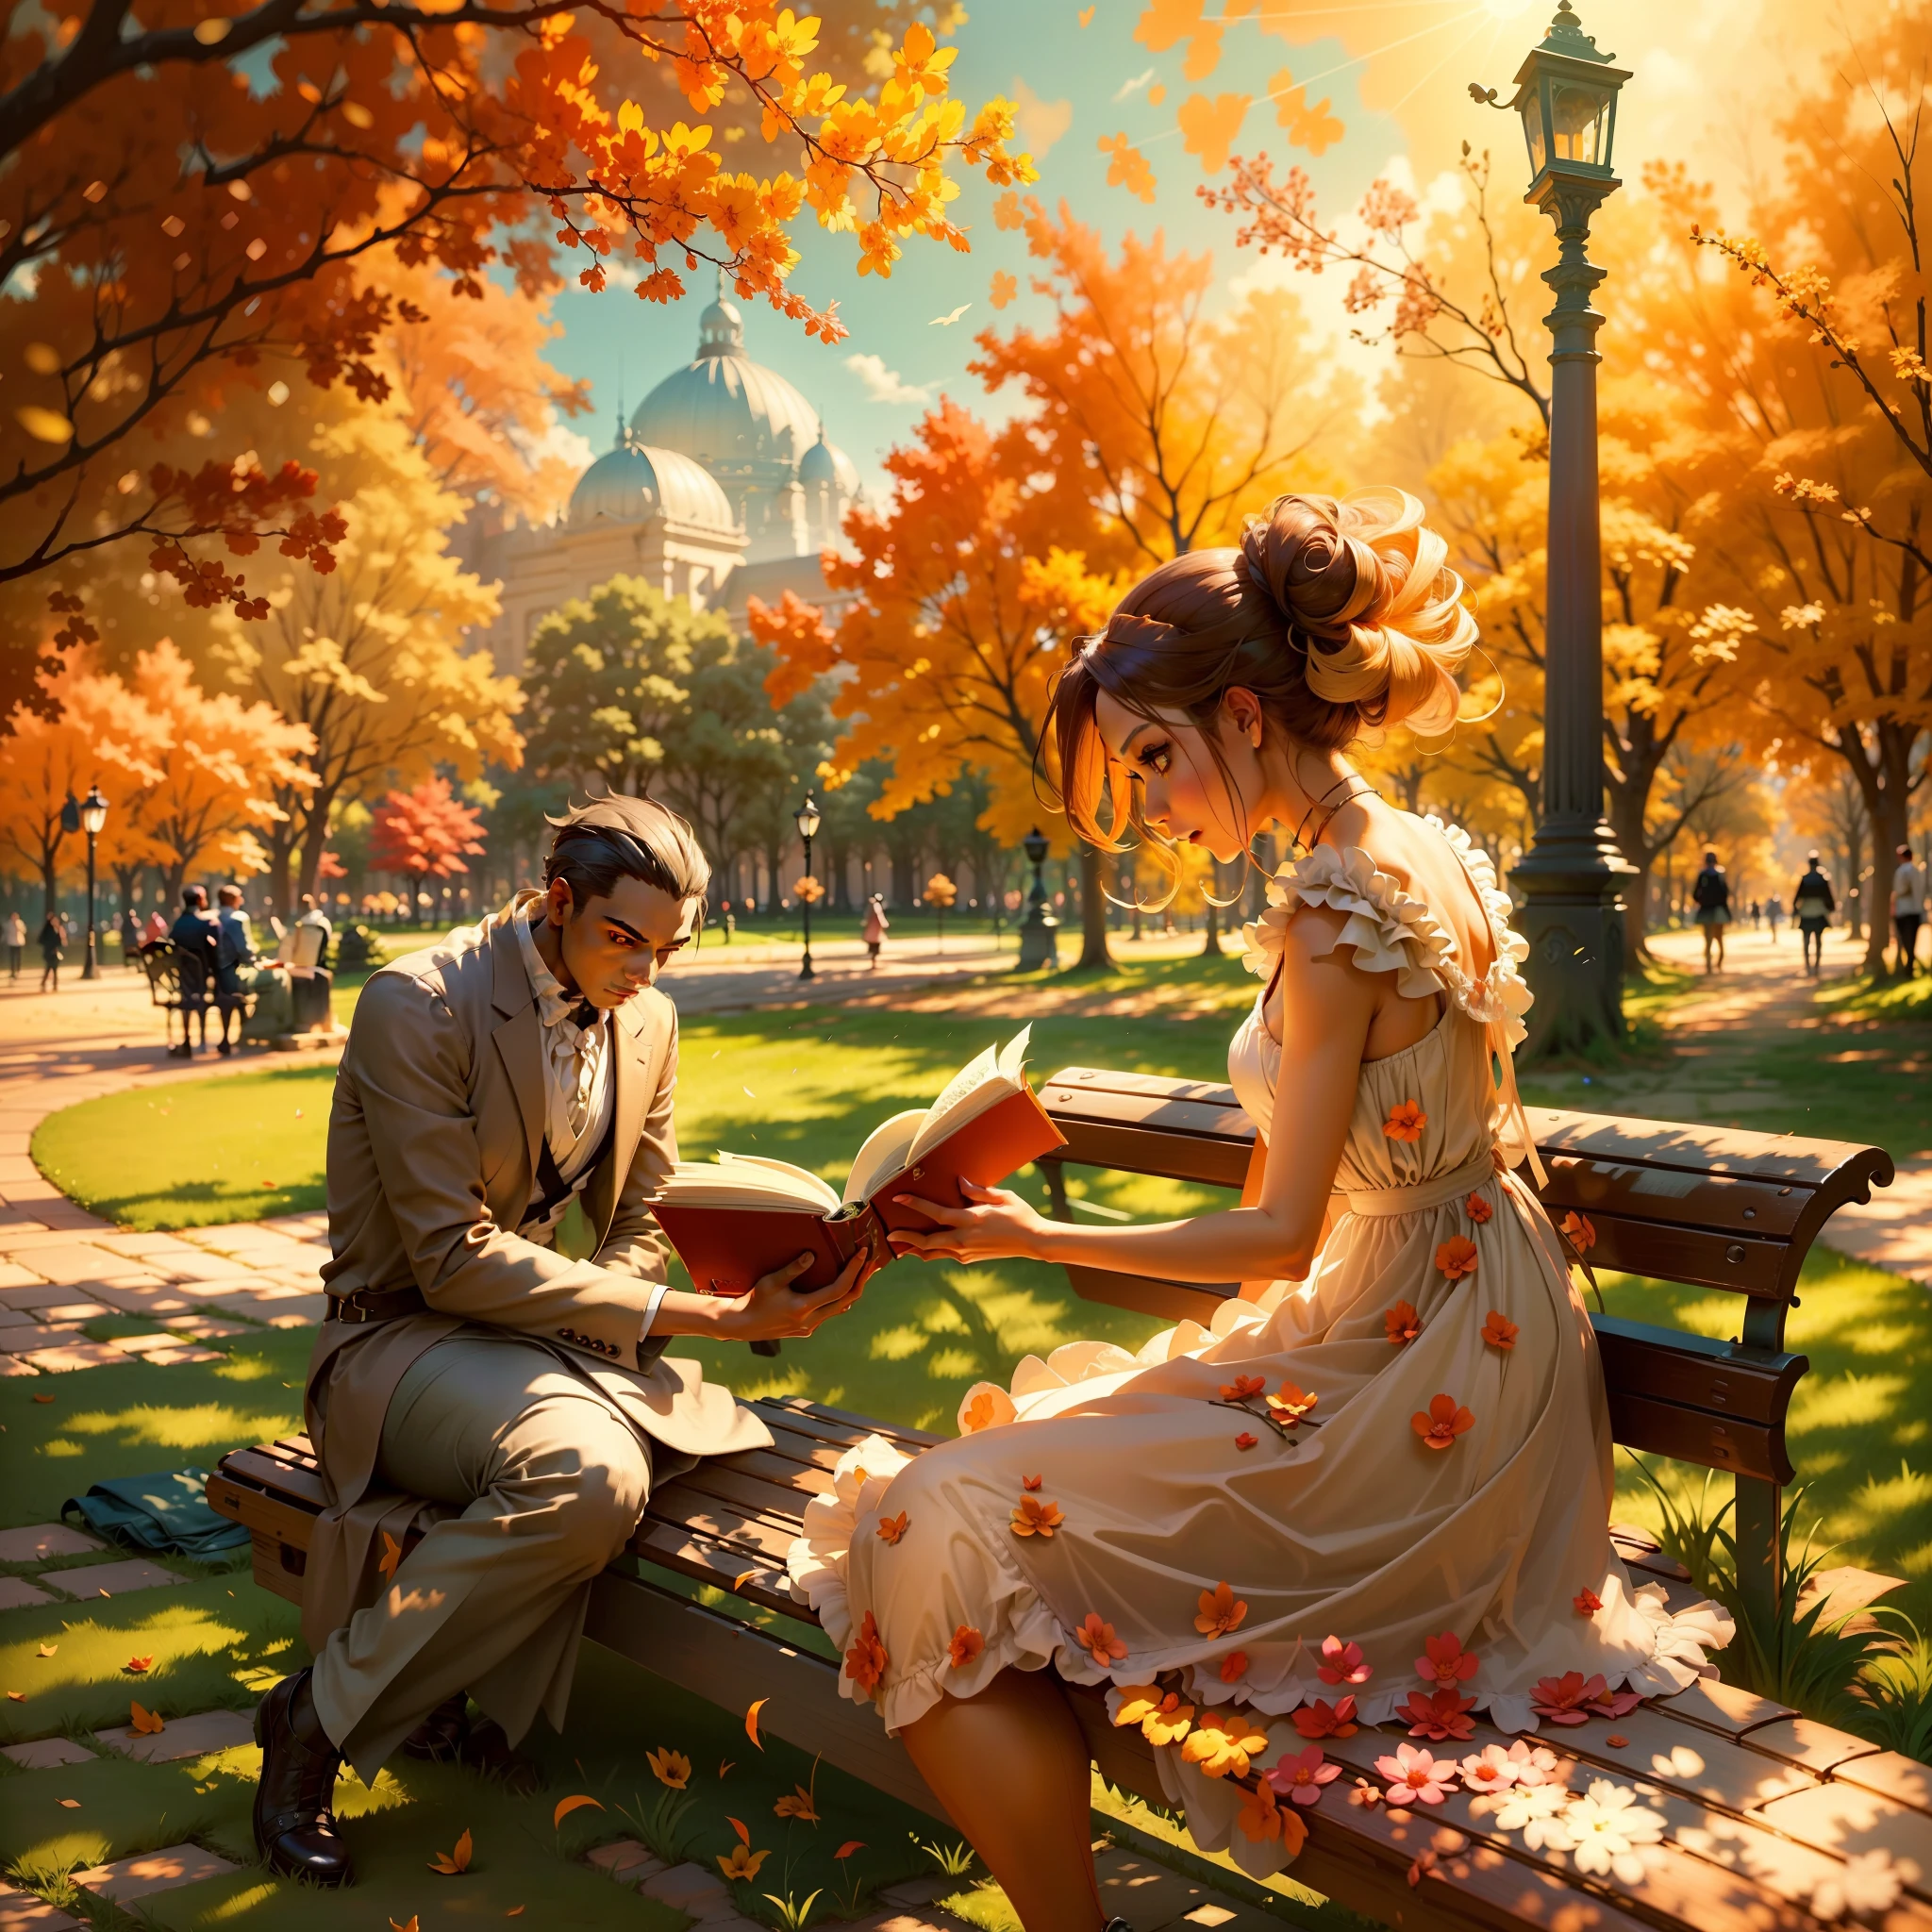 Imagina una escena en la que una mujer camina por el parque en una tarde soleada.. Lleva un vestido elegante que realza su belleza., y sus ojos curiosos se fijan en un HOMBRE sentado en un banco., completamente inmerso en un libro. Describe la atmósfera vibrante creada por los rayos del sol en el fondo..